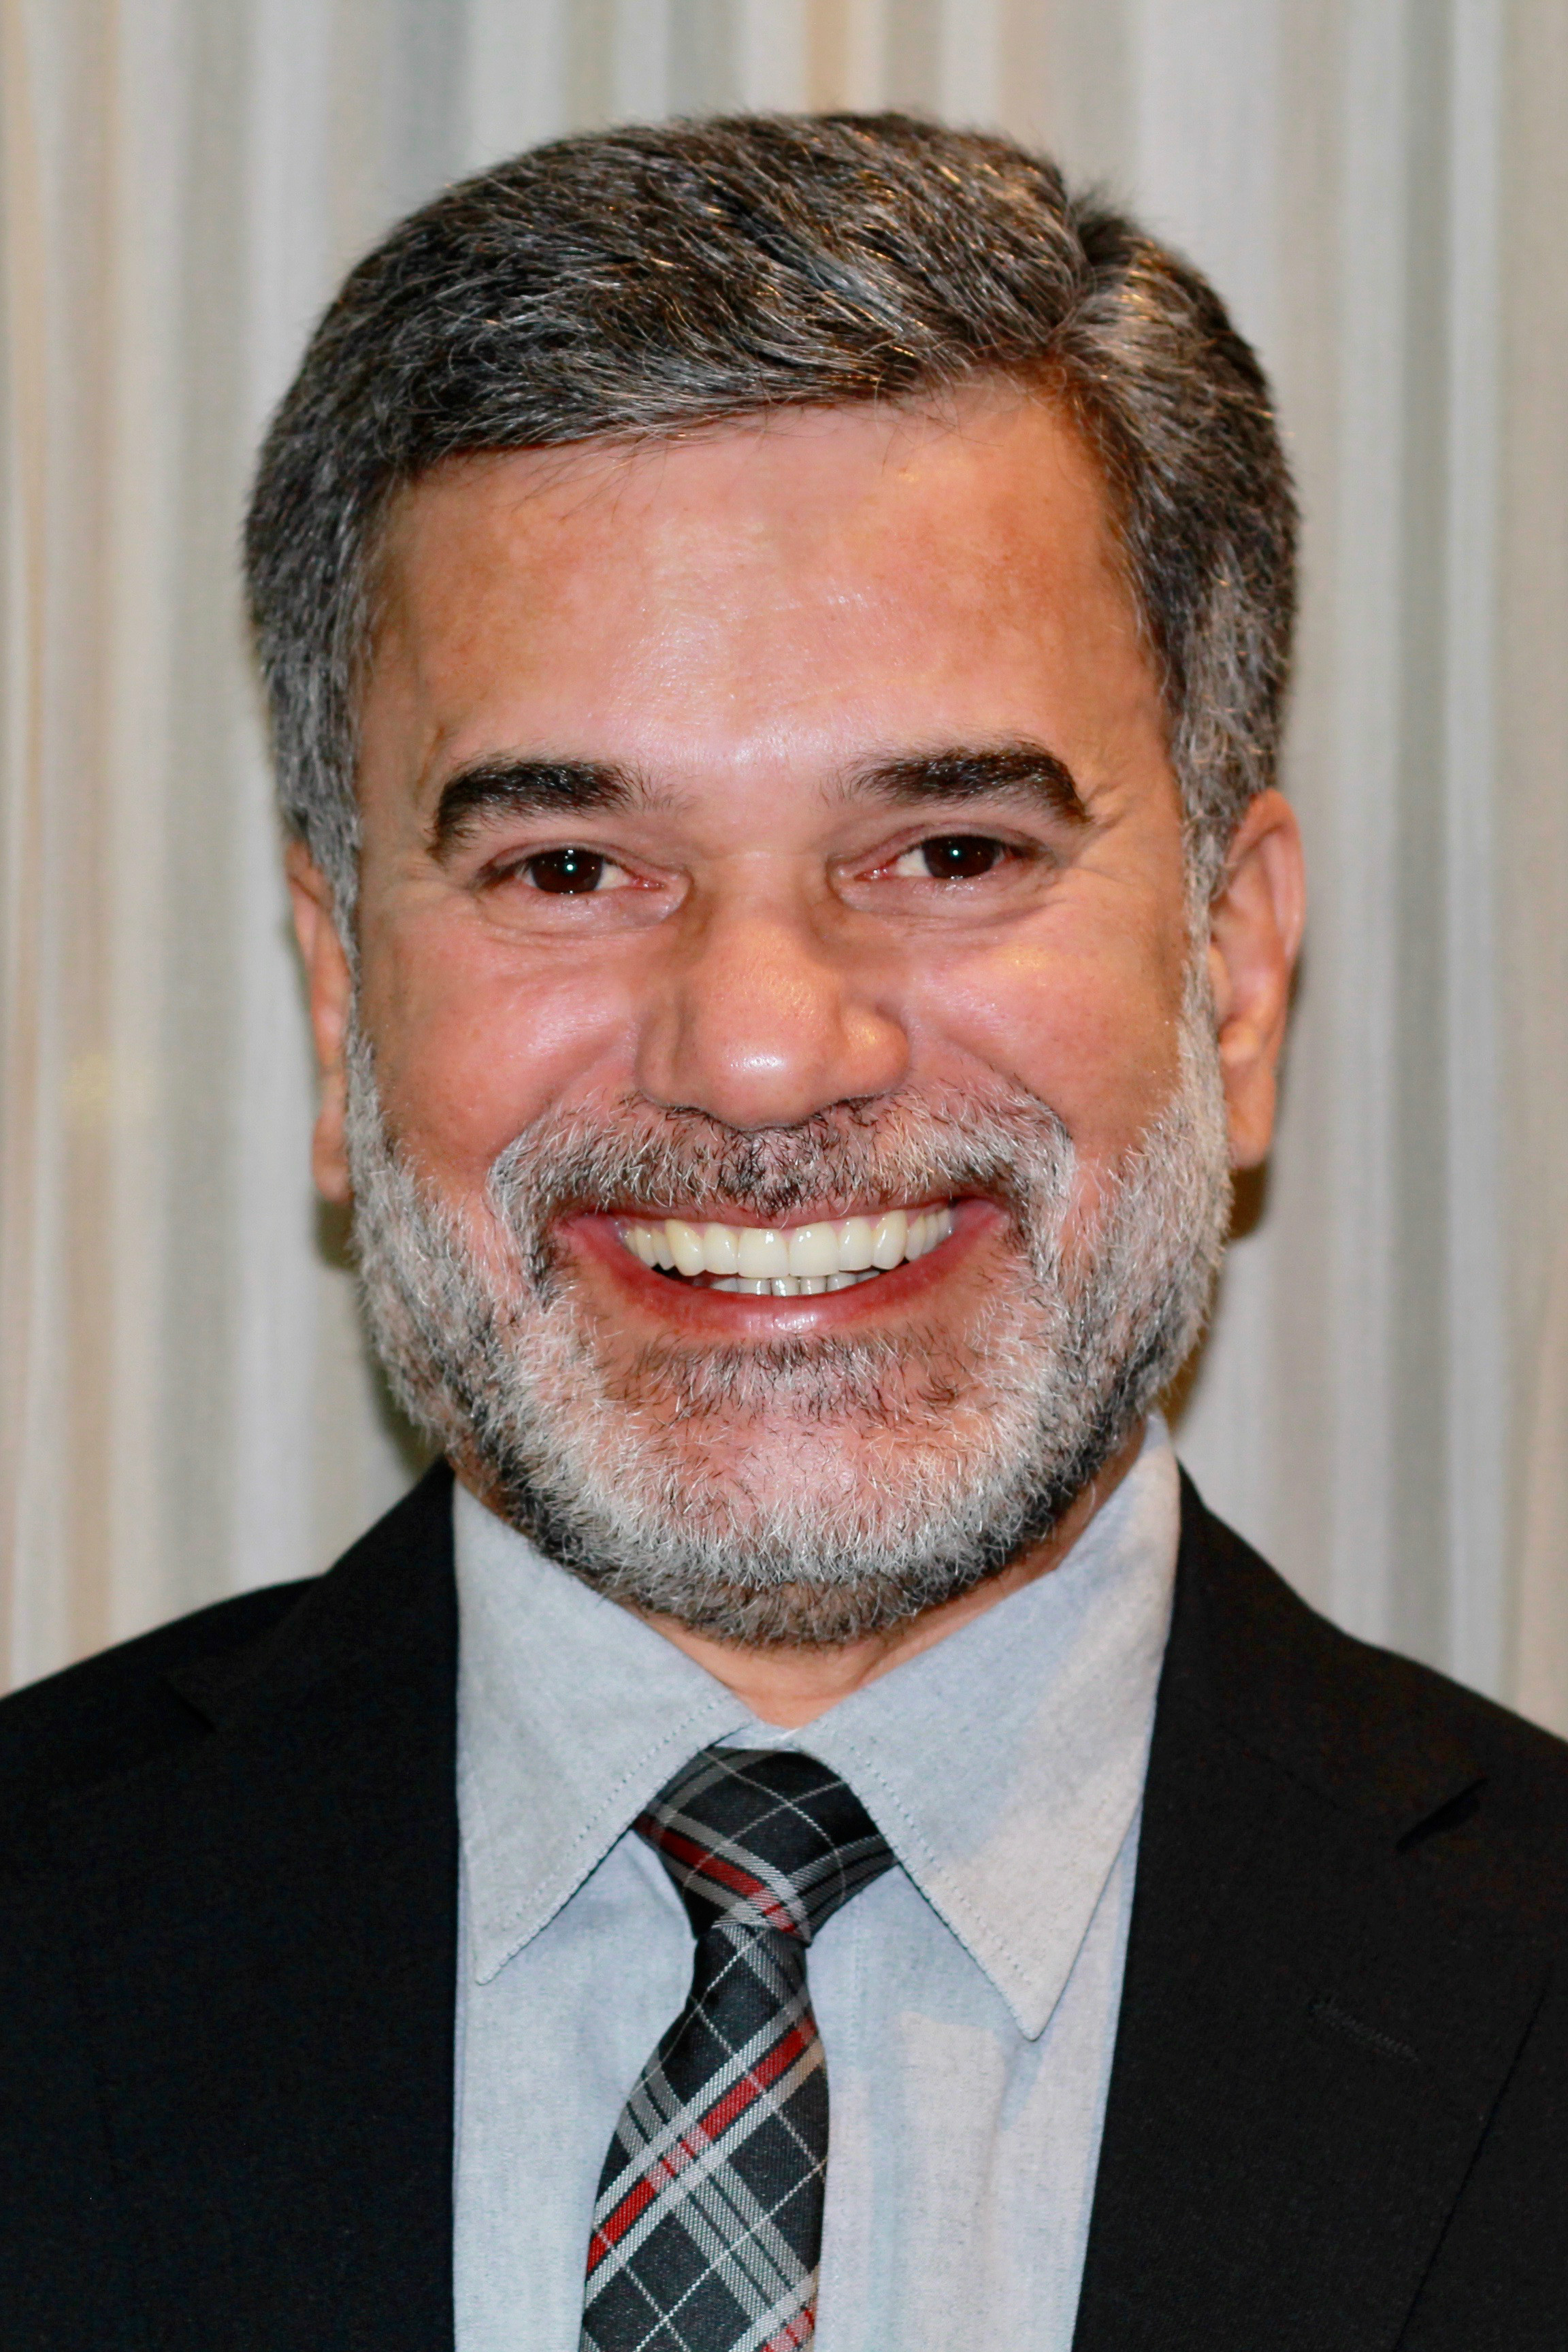 Luis Carlos Ramos Nogueira